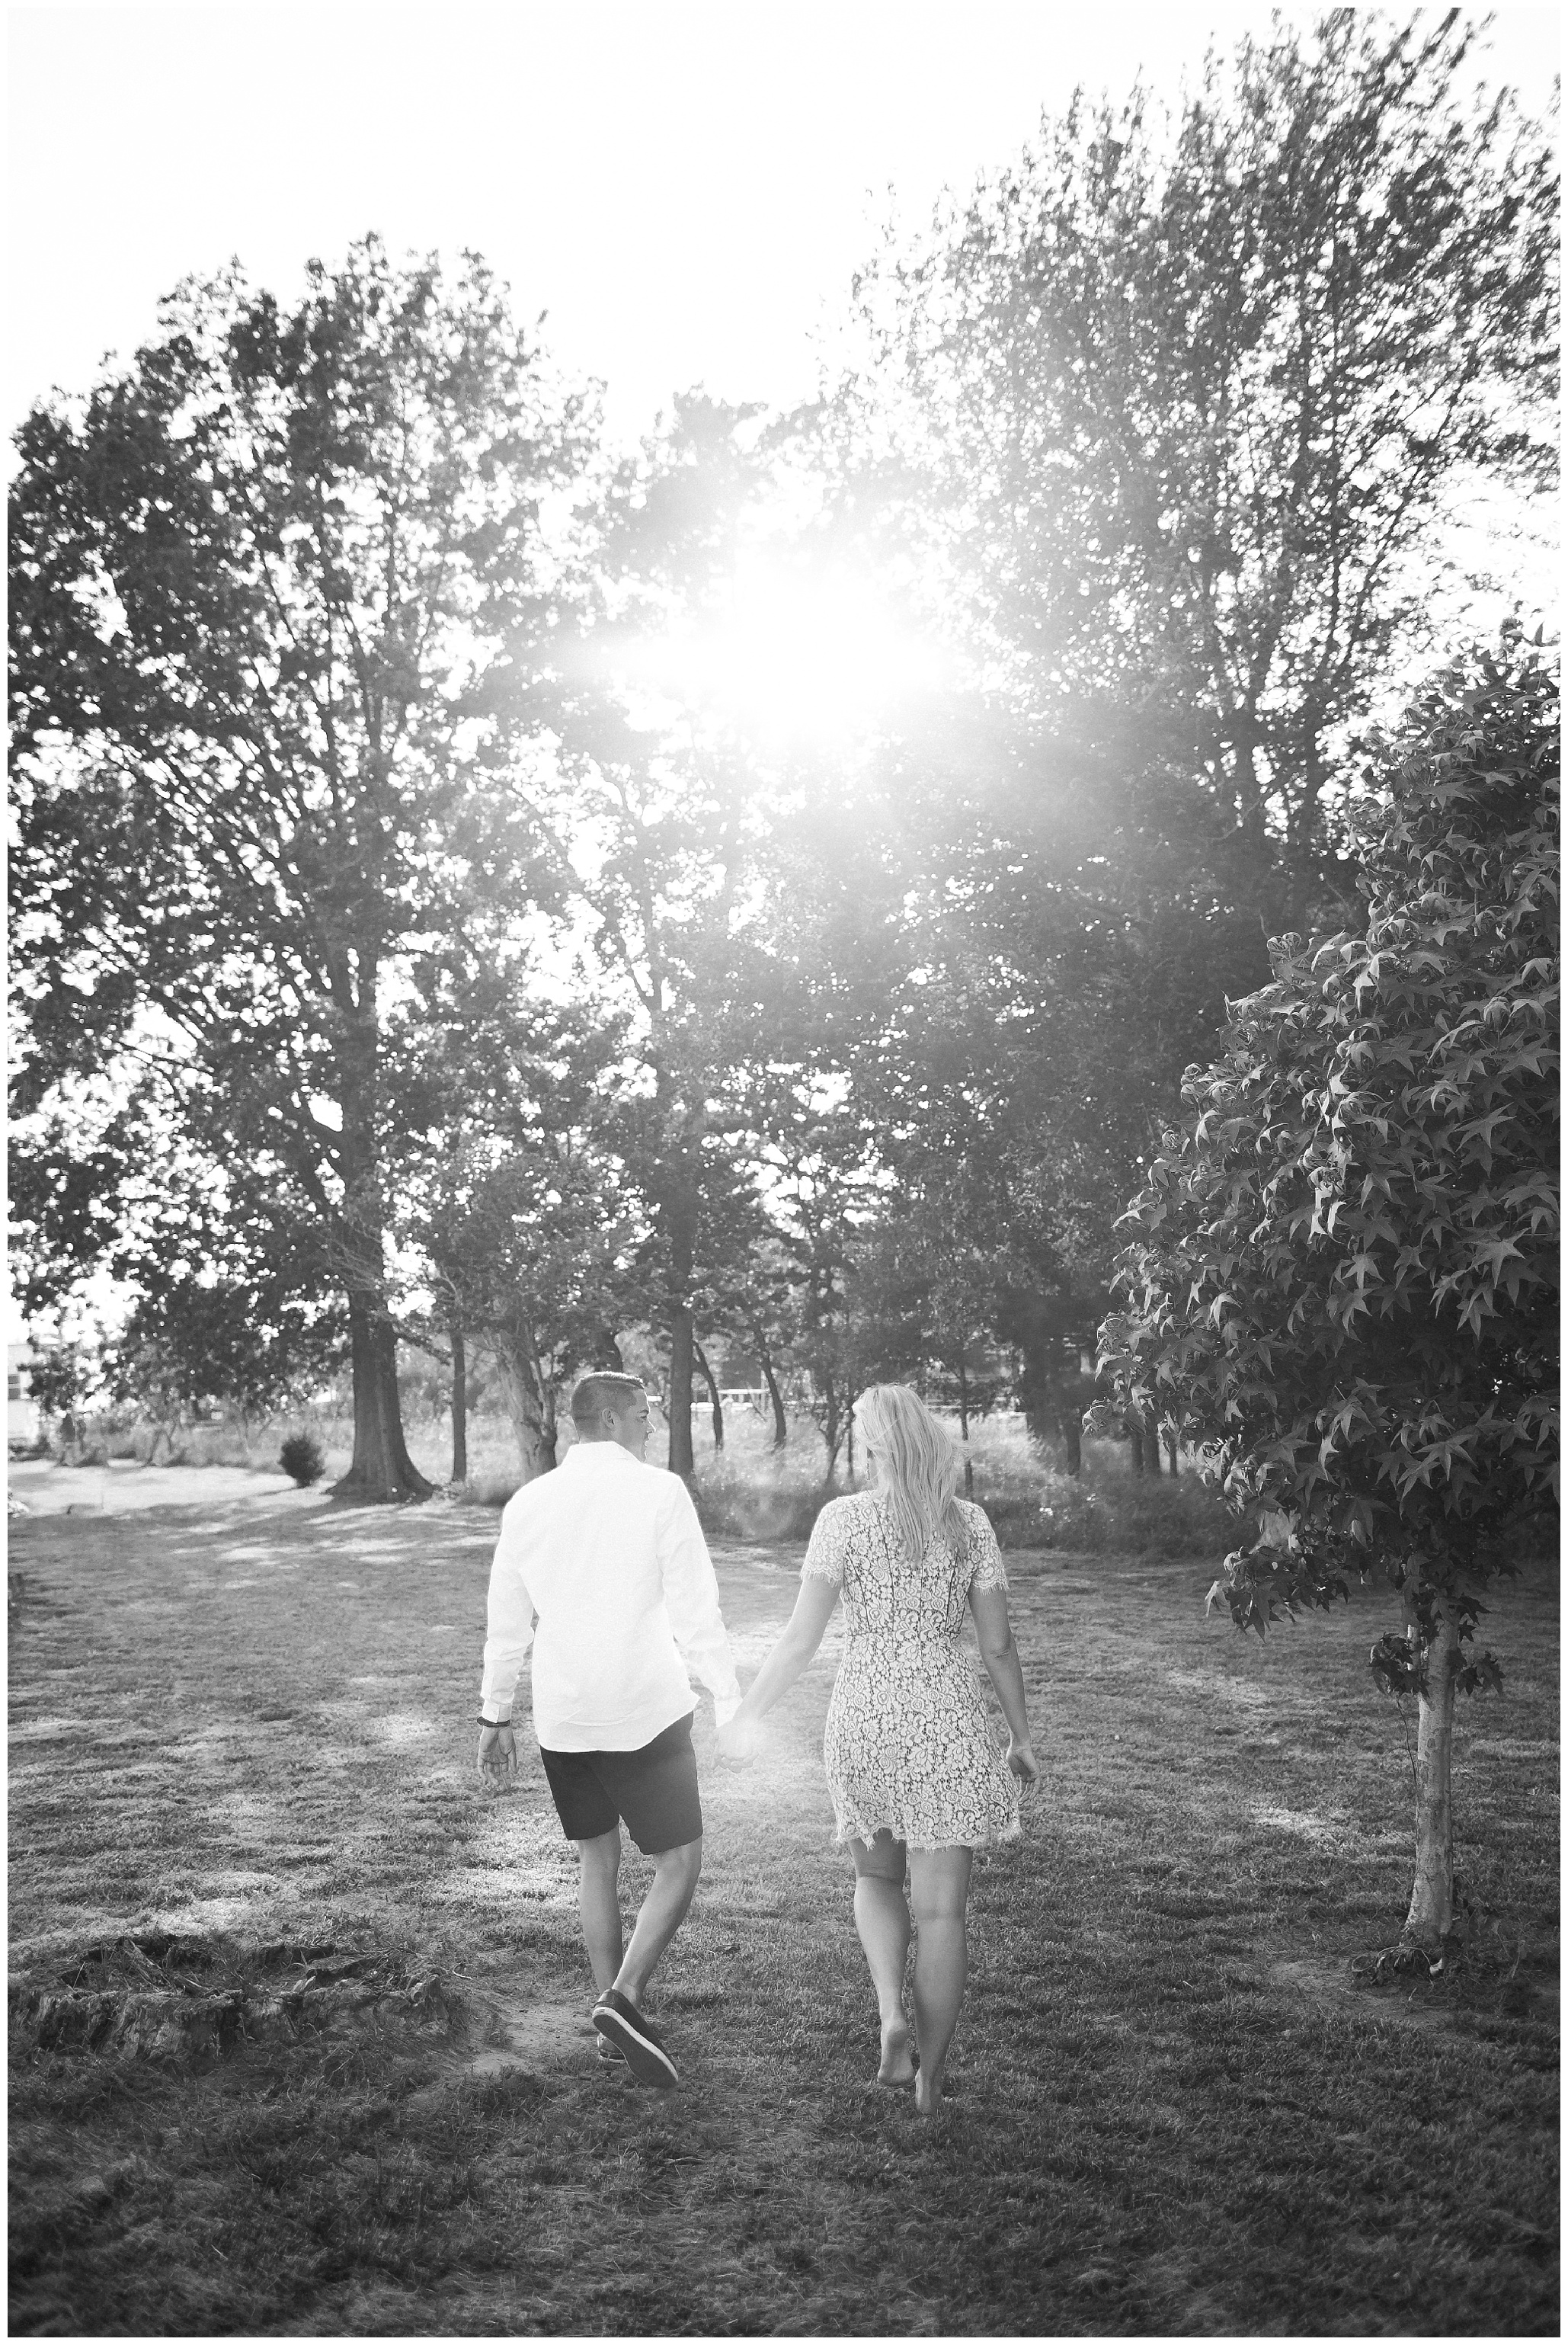 summer engagement photos virginia wedding photographers Luke and Ashley Photography 